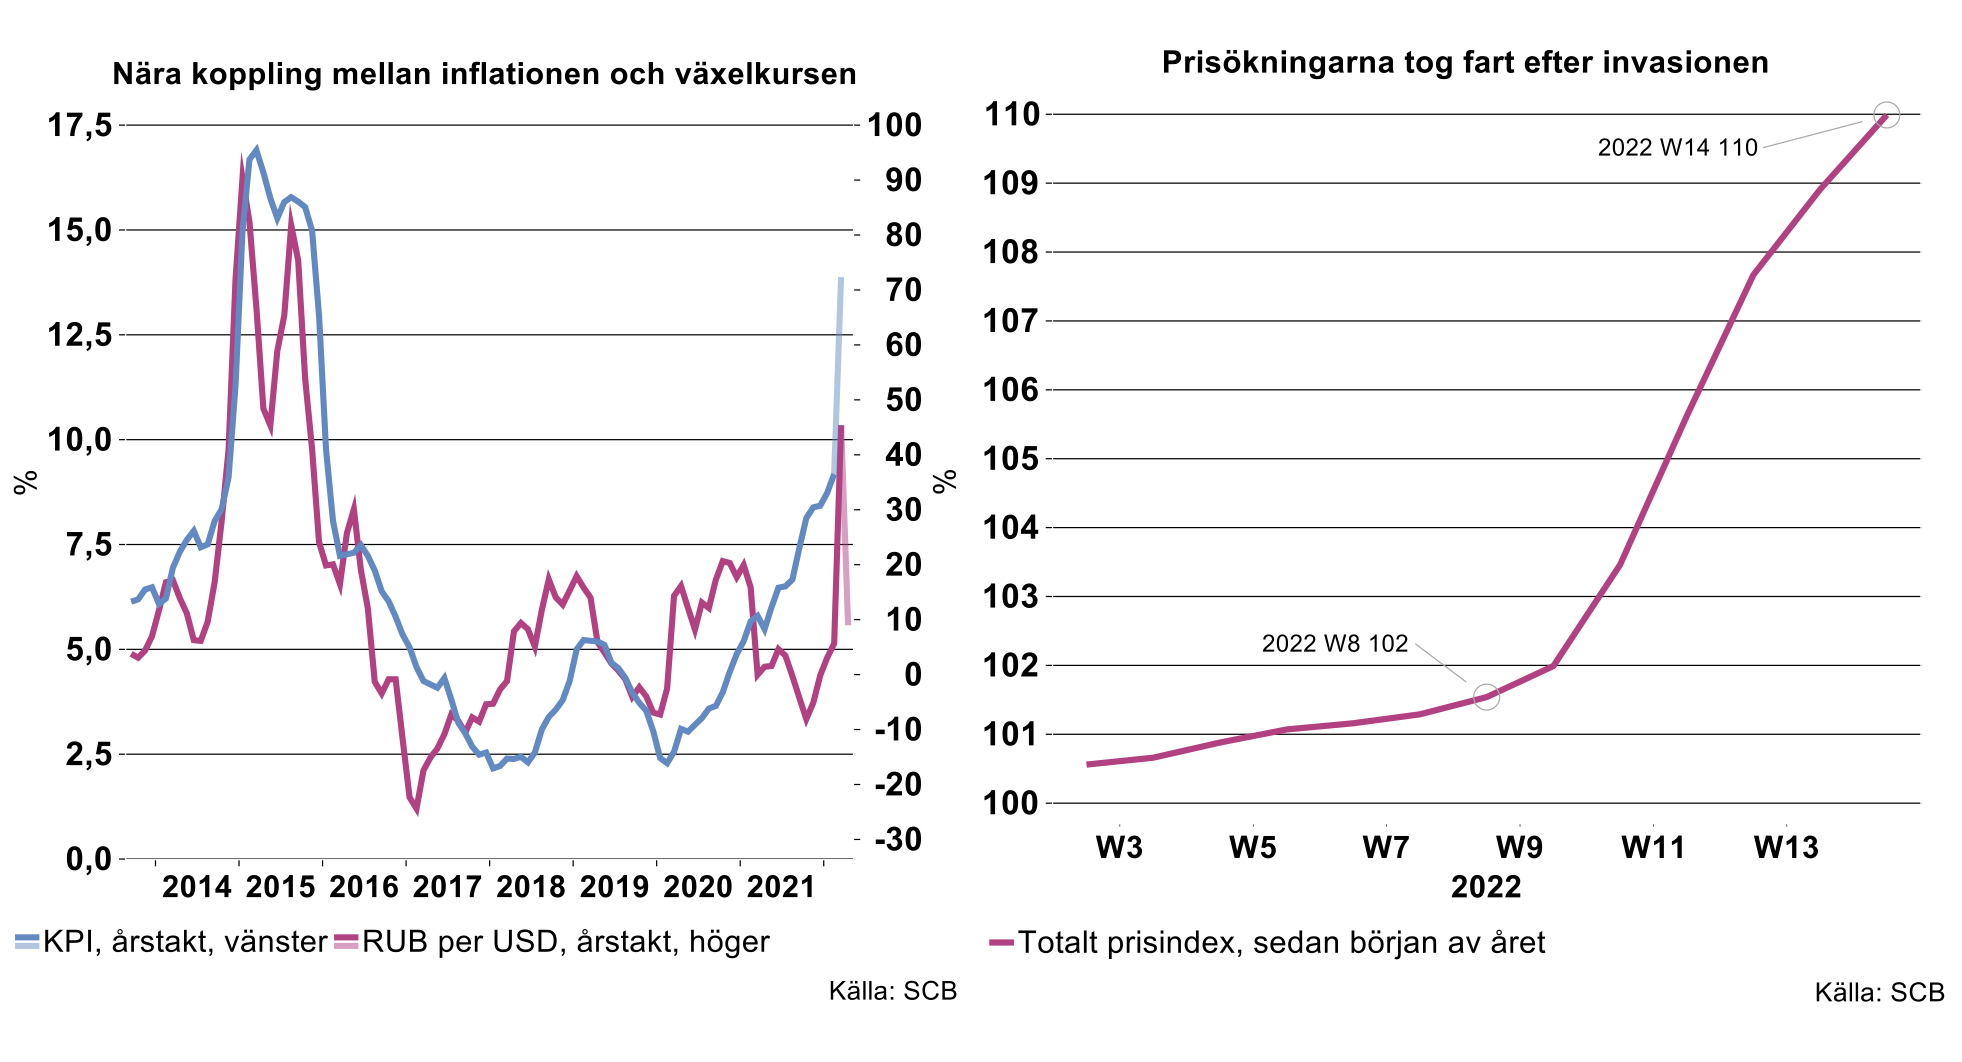 nara-koppling-mellan-inflationen-och-vaxelkursen.png